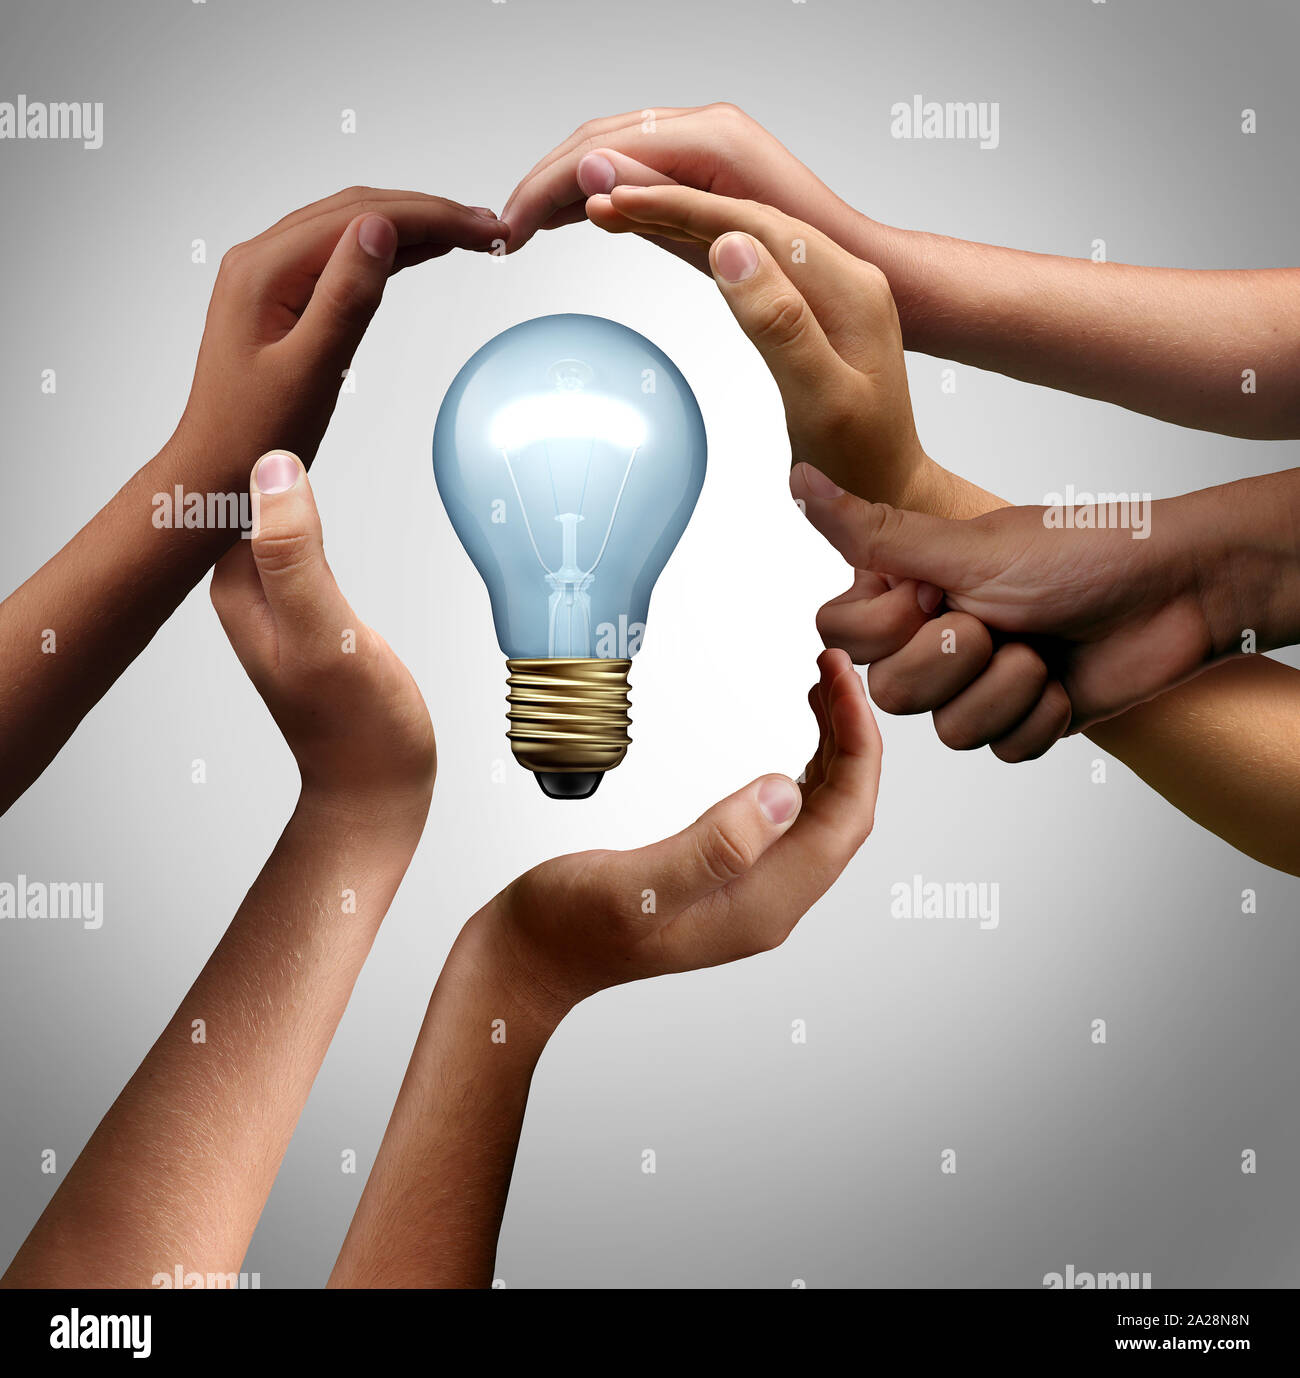 Inspirer les gens penser ensemble, comme un groupe diversifié venant ensemble unissant leurs efforts pour collaborer dans la forme d'une ampoule d'inspiration. Banque D'Images